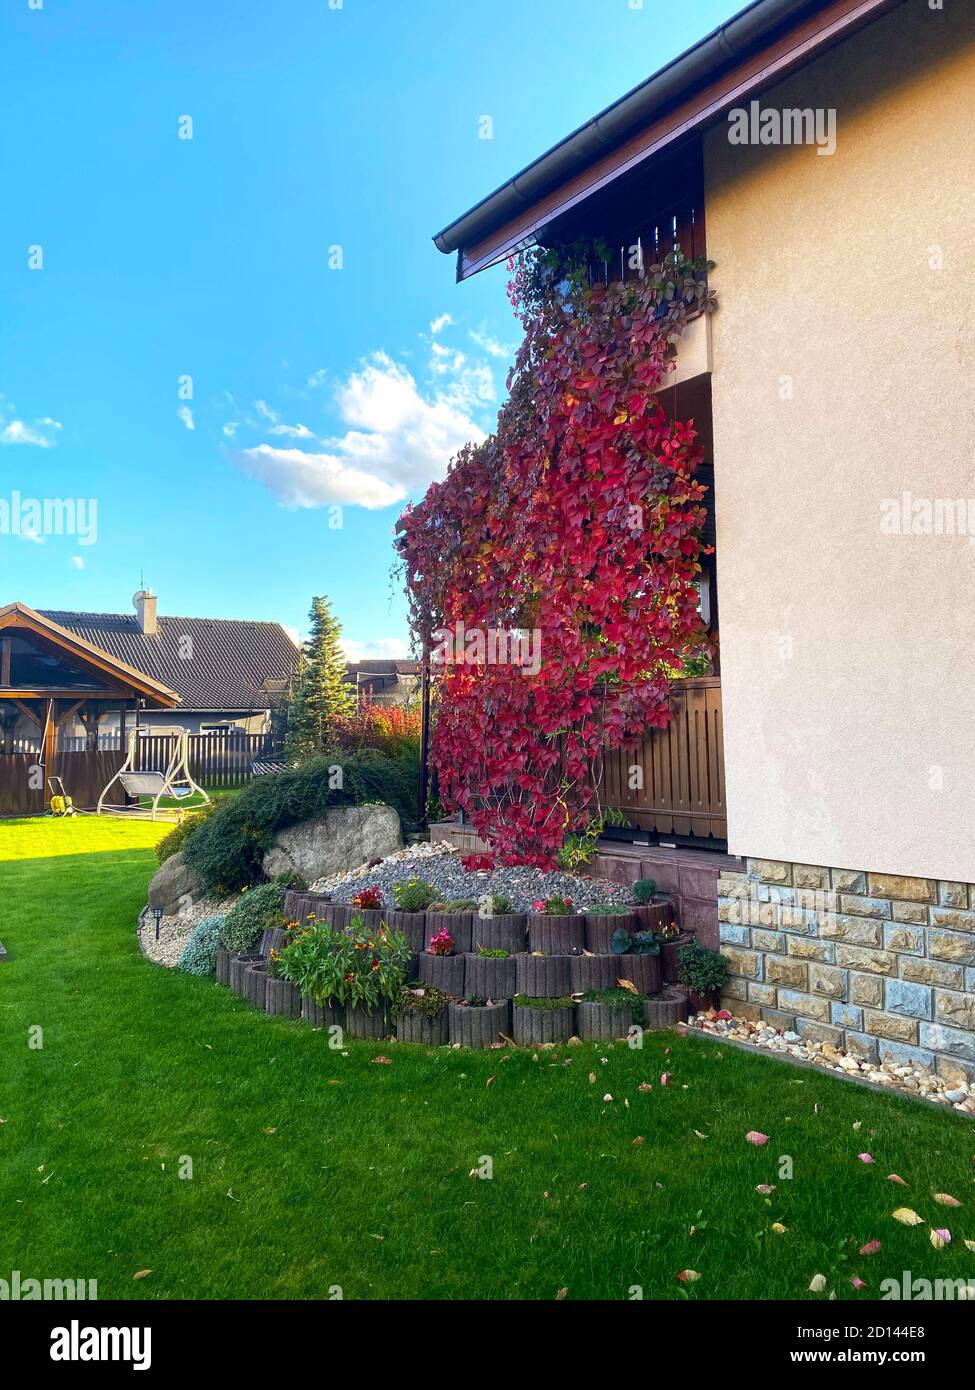 Jardin vertical de belles feuilles rouges d'automne sur le mur de porche. Maison familiale jardin coloré. Banque D'Images